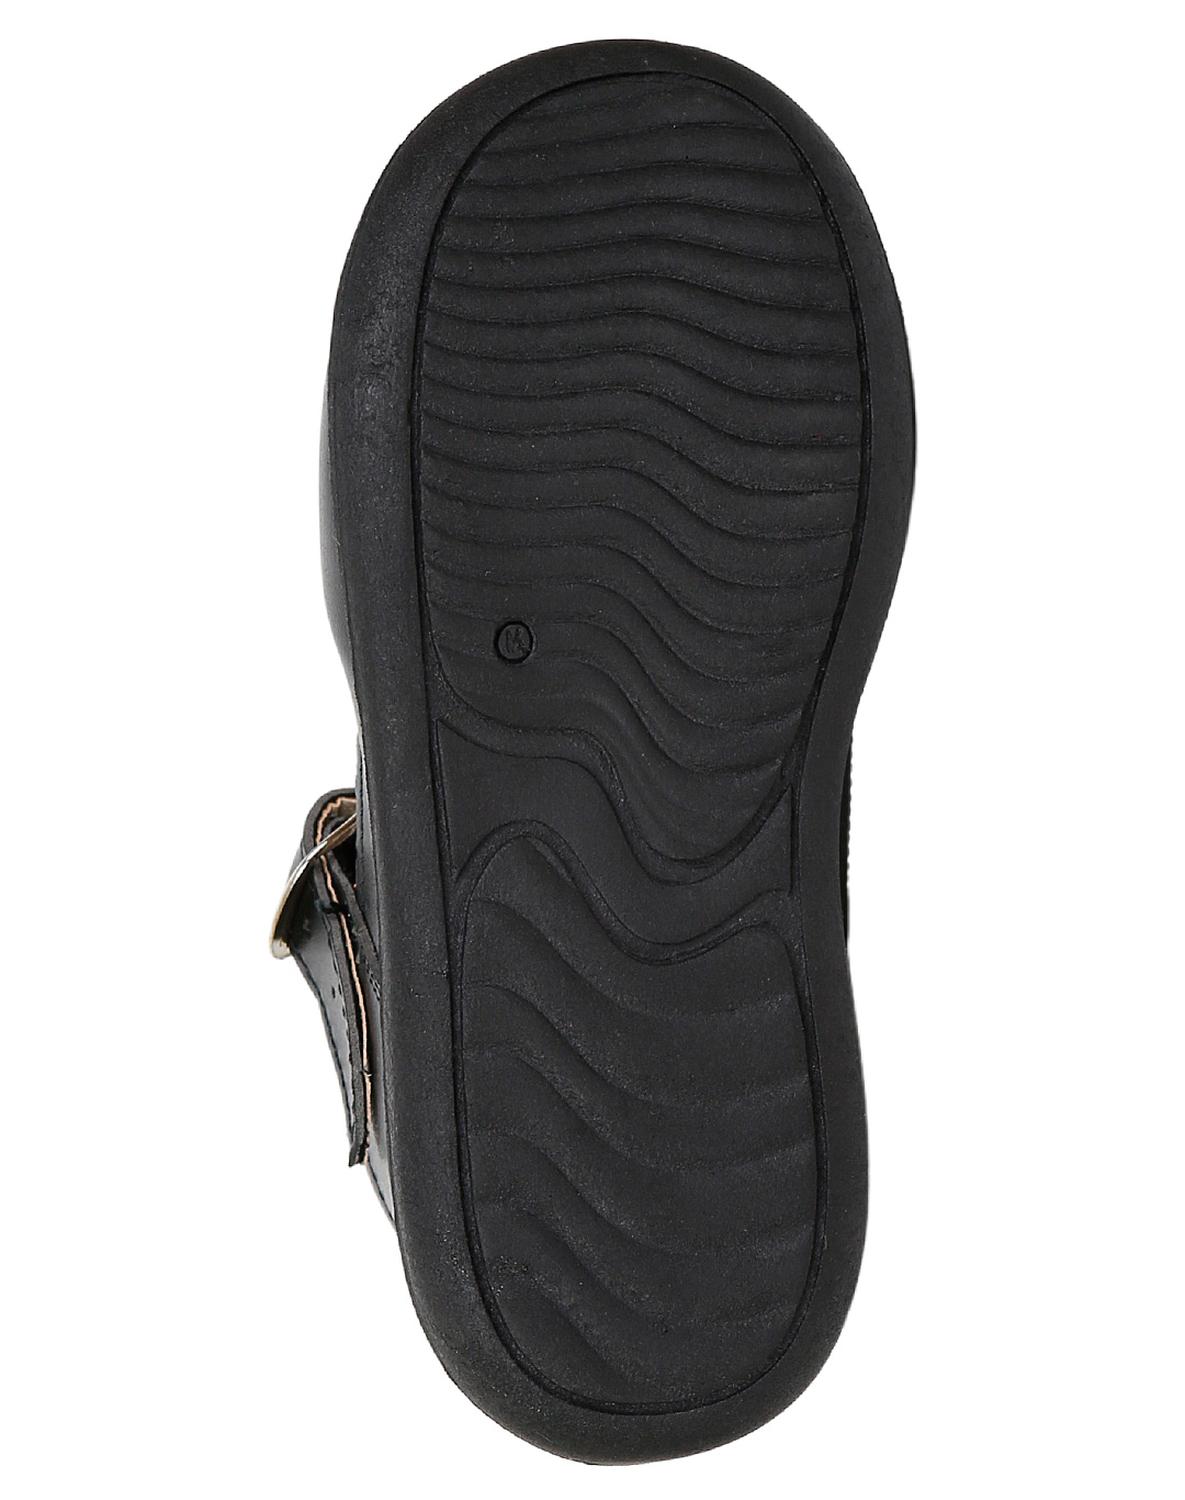 Zapato Escolar Niña Krsh Negro Tipo-Napa 19202402